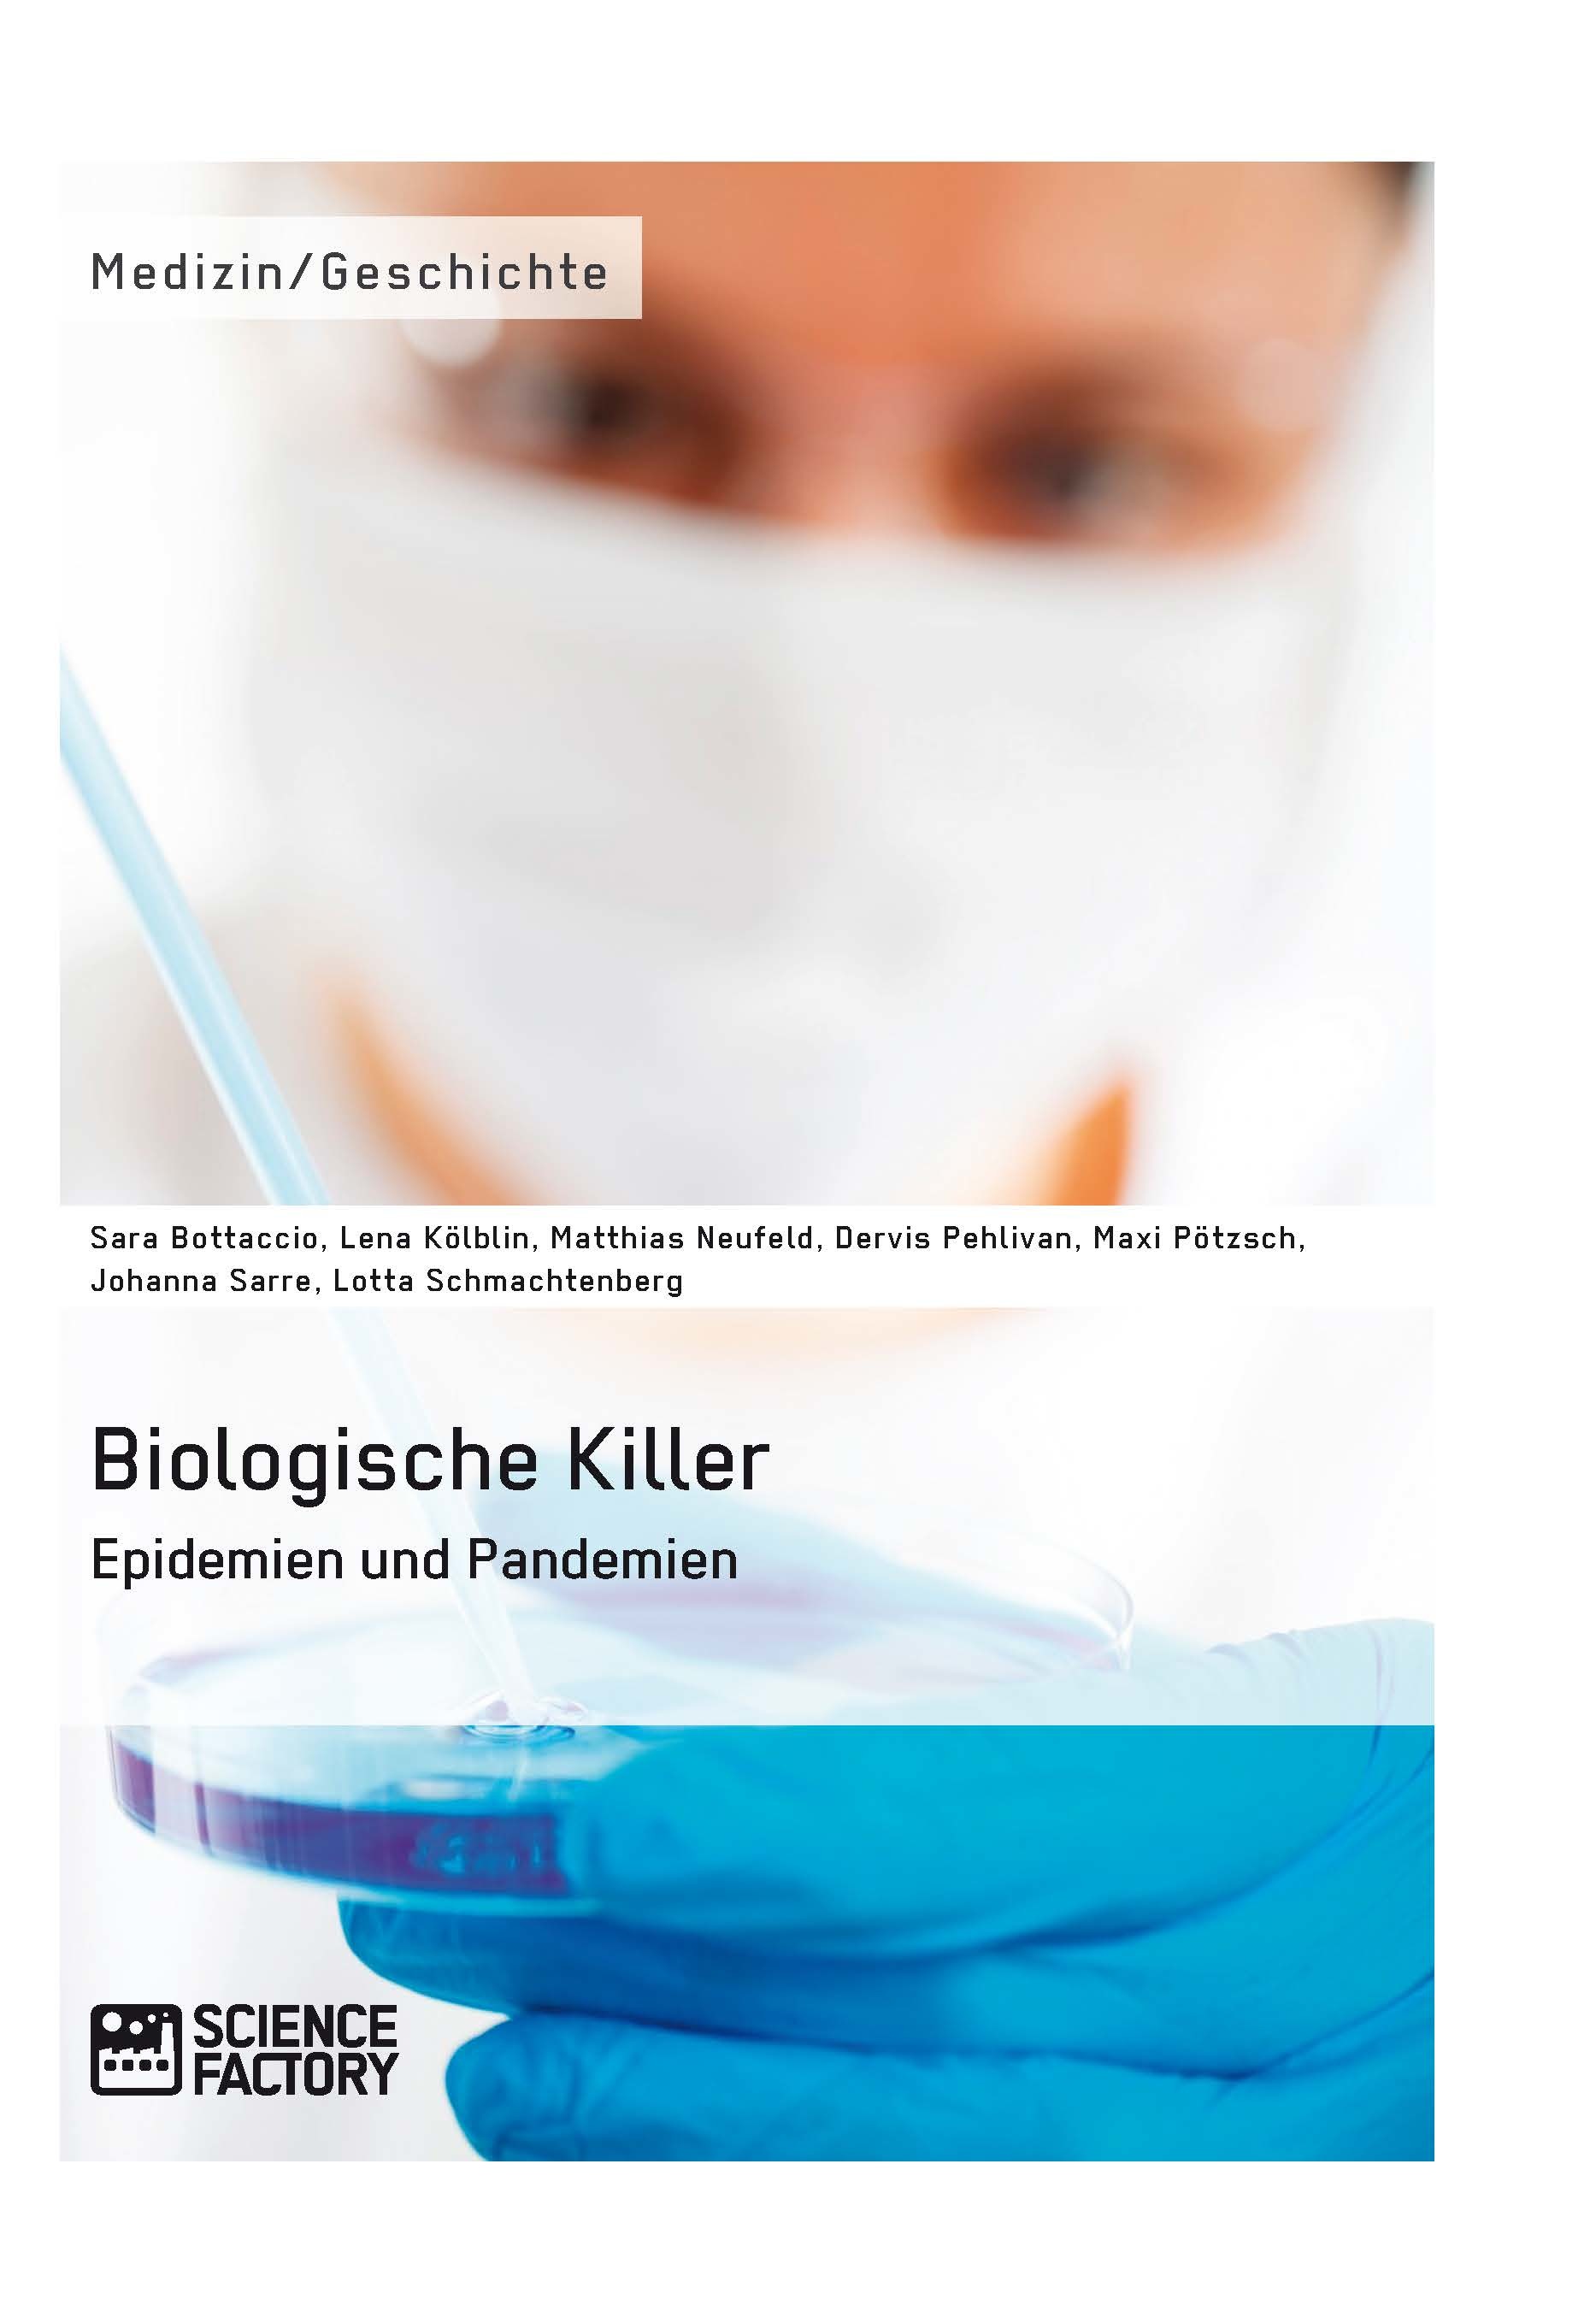 Título: Biologische Killer. Epidemien und Pandemien